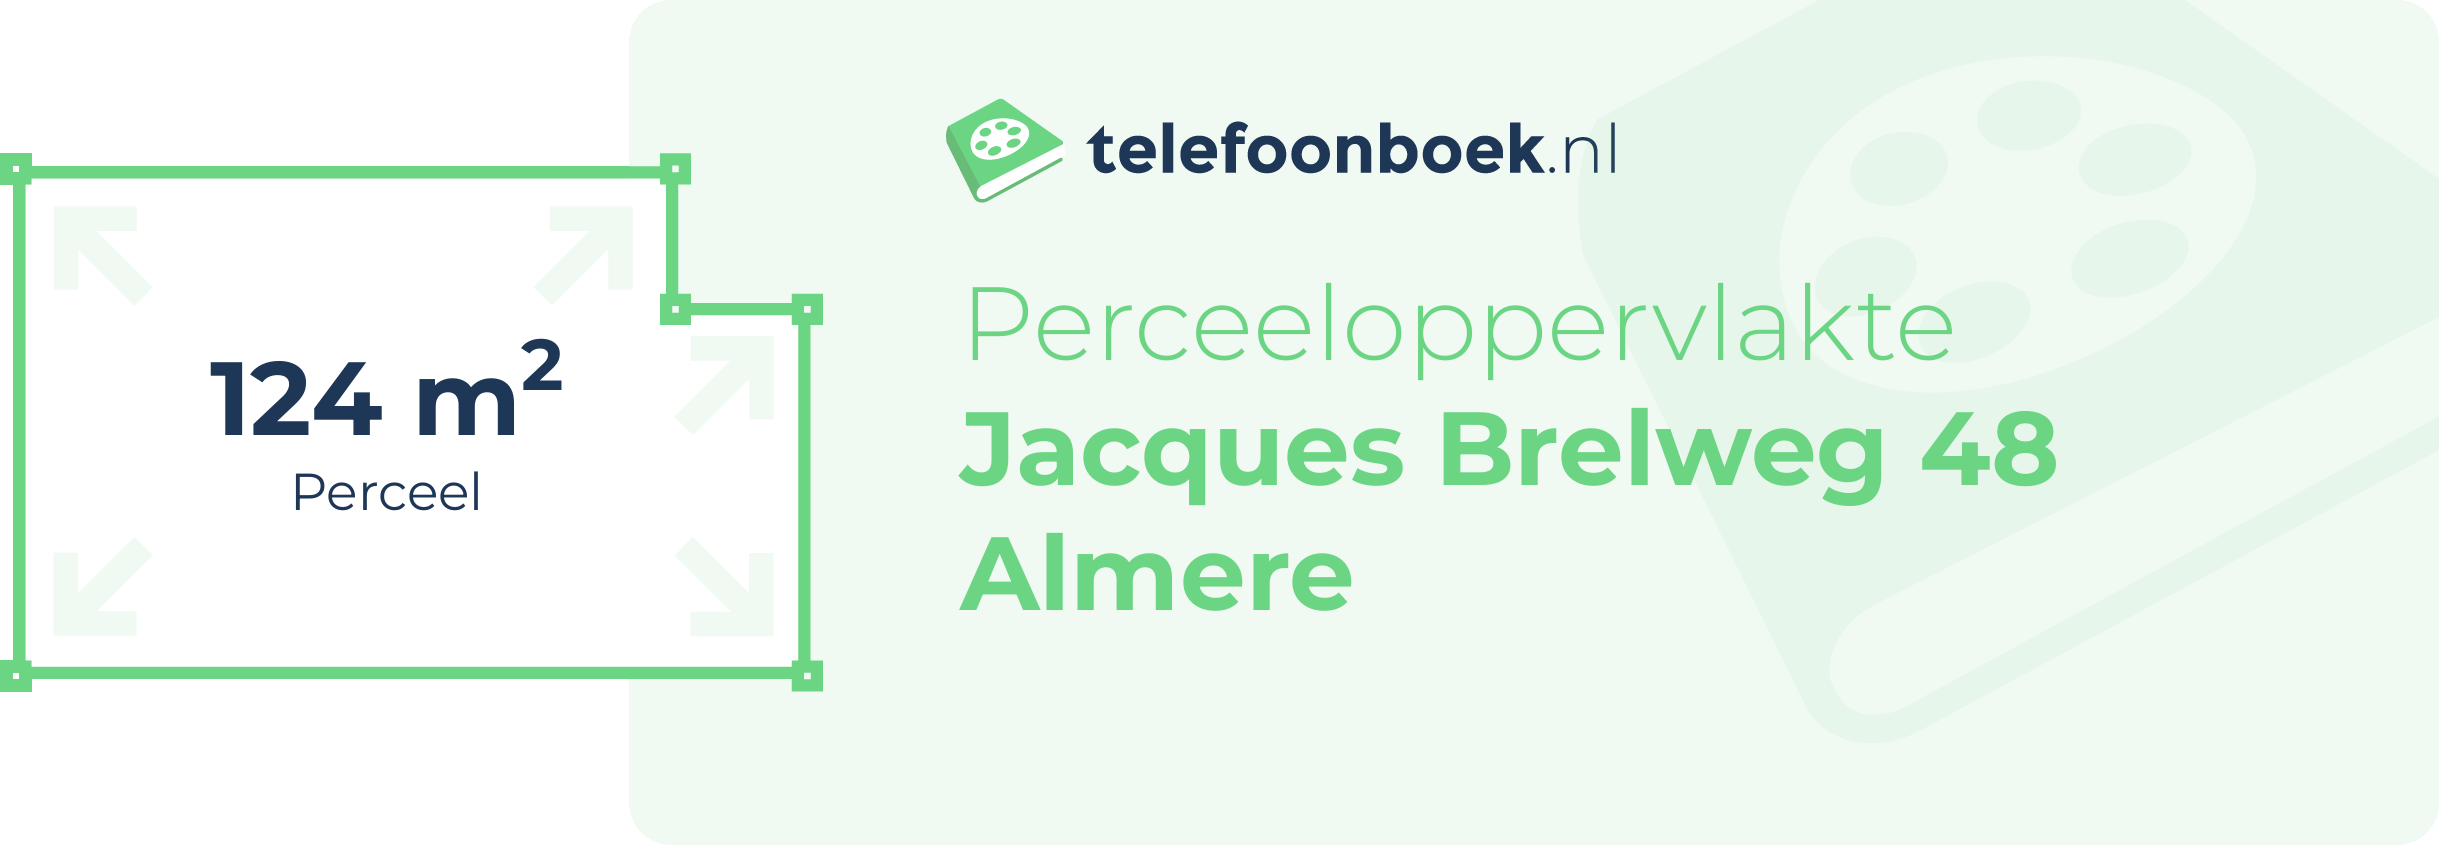 Perceeloppervlakte Jacques Brelweg 48 Almere